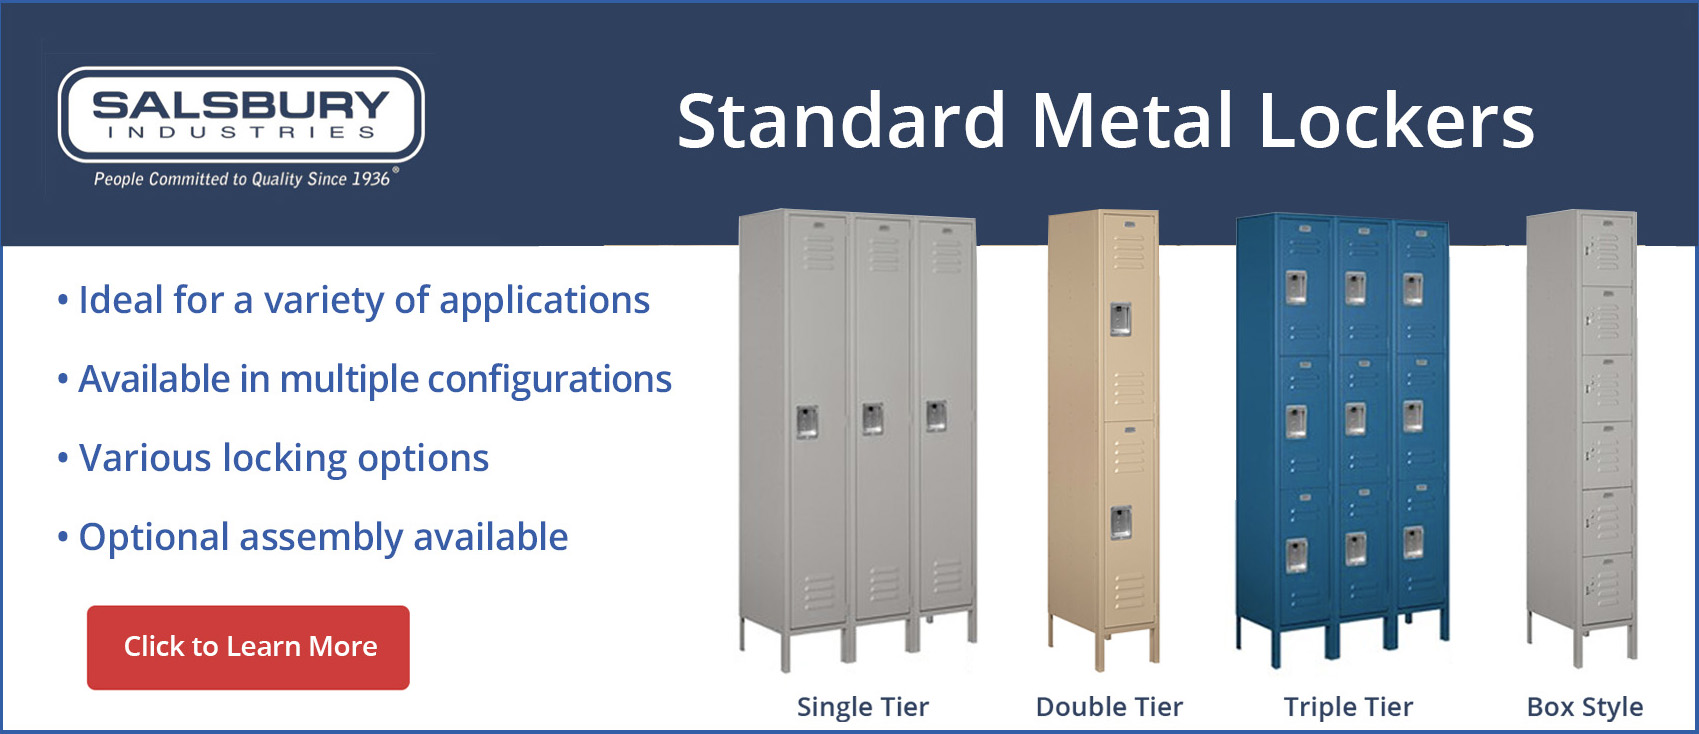 Standard Metal Lockers